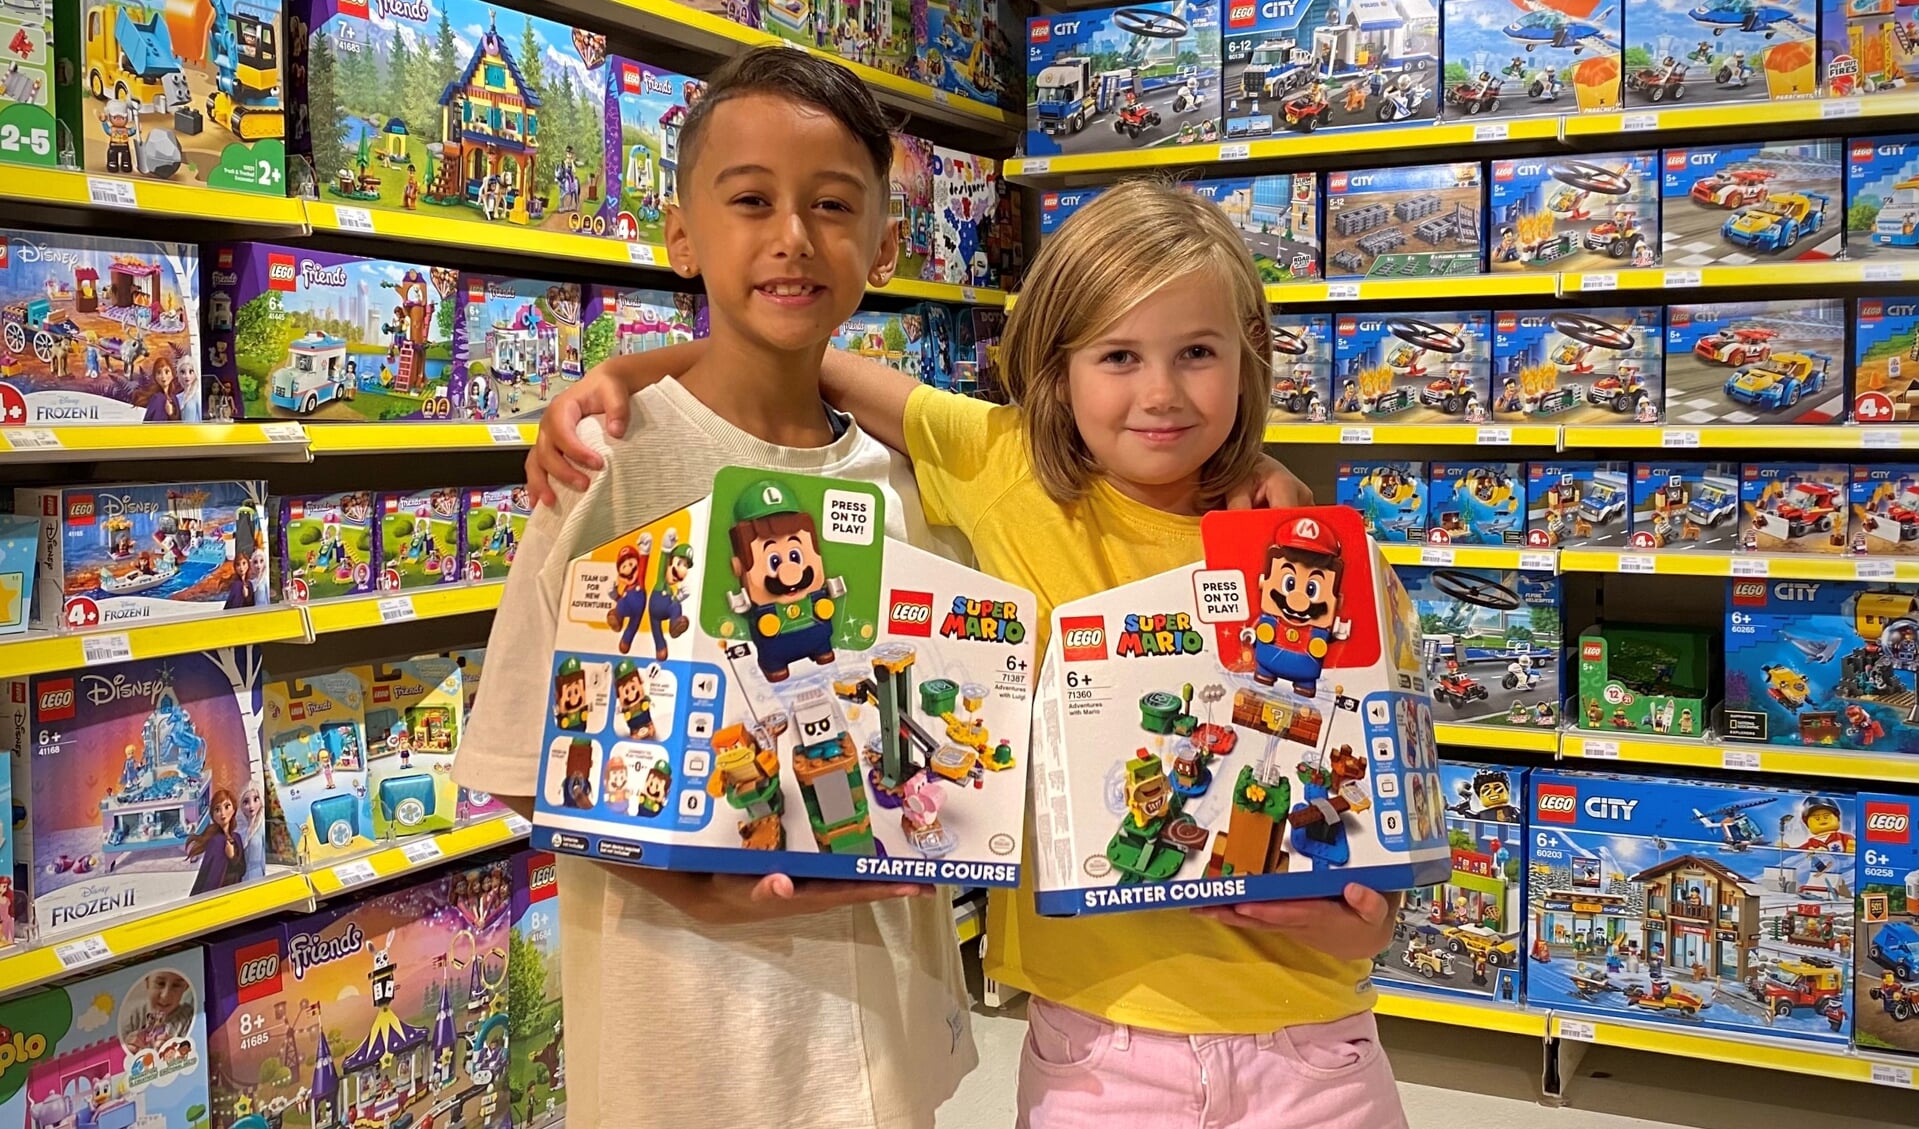 Jordann en Emily testen de Legoset met Mariofiguren, ''Je bent echt een beetje in je Mariospel aanwezig”, aldus Jordann.